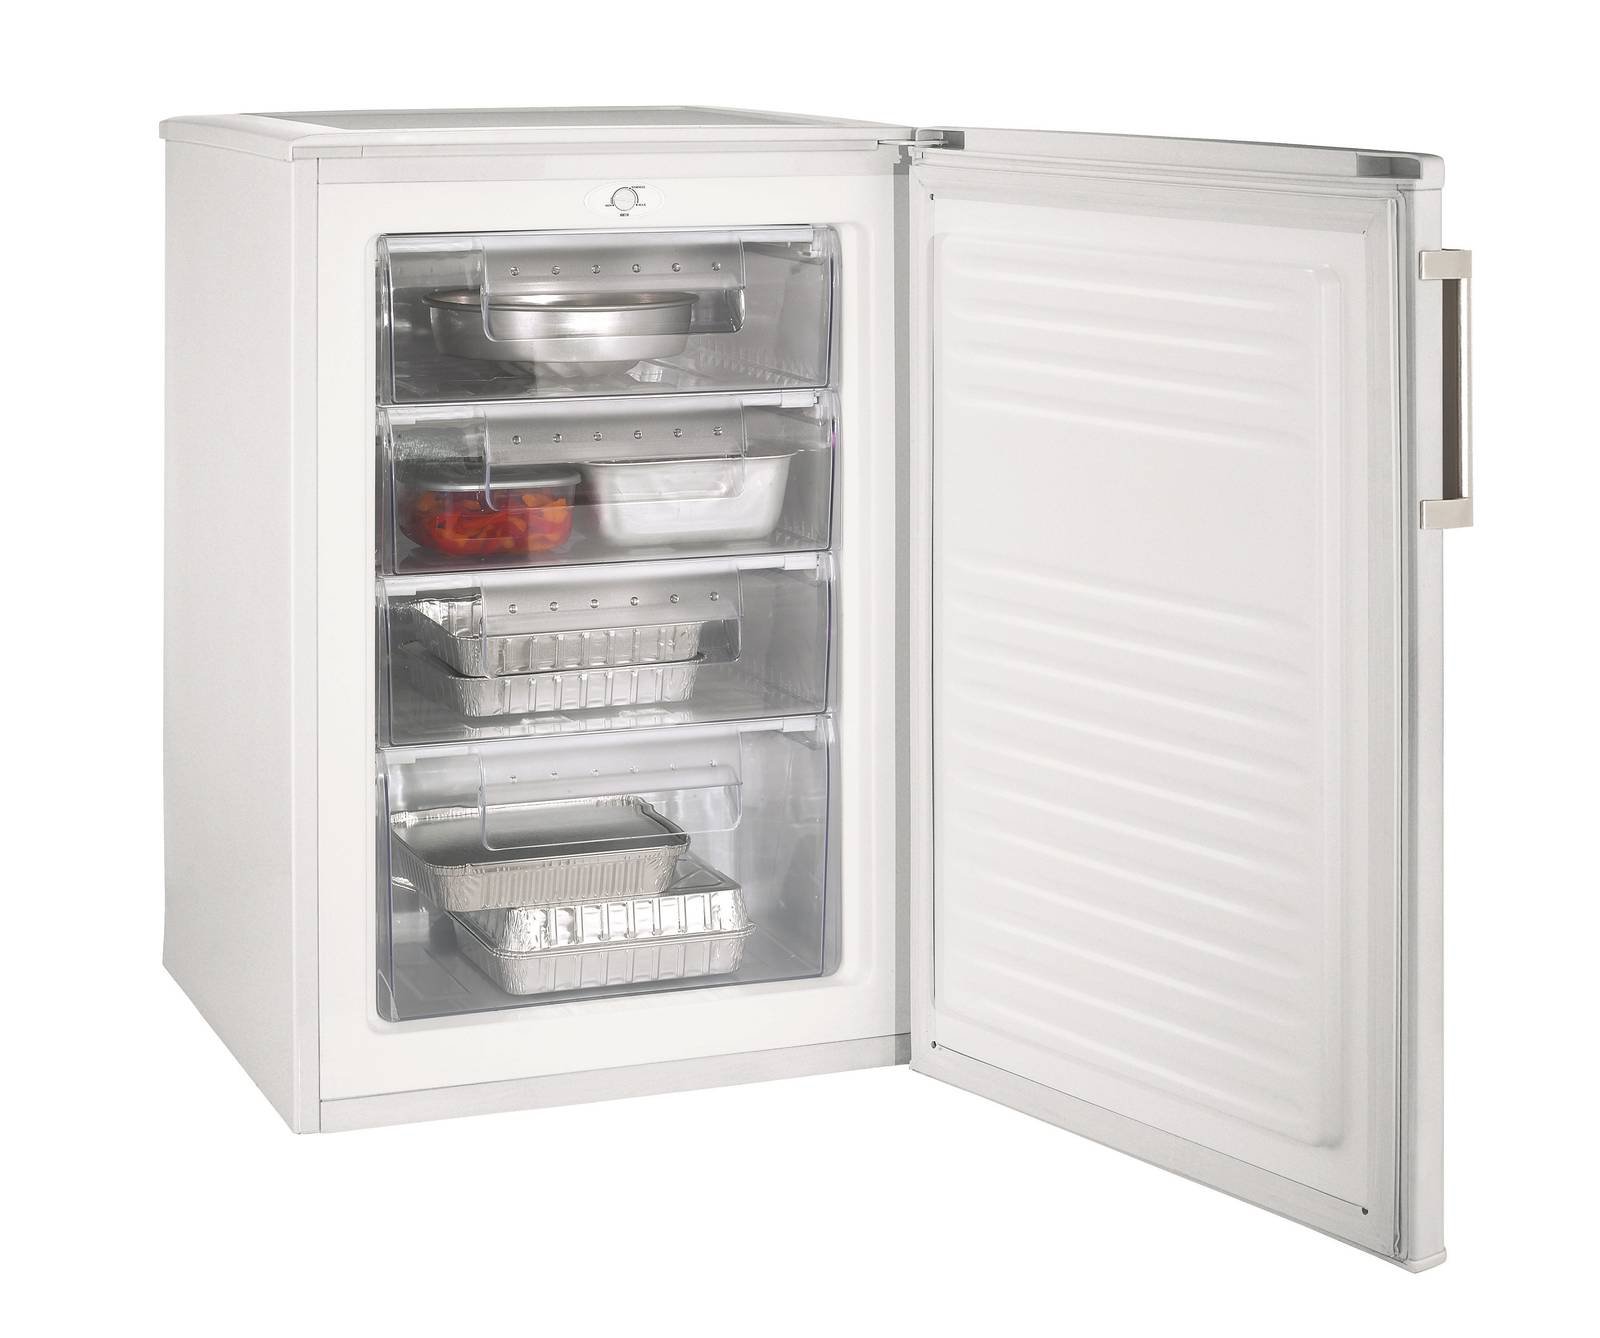 I congelatori verticali sono dotati di scomparti e cassetti?